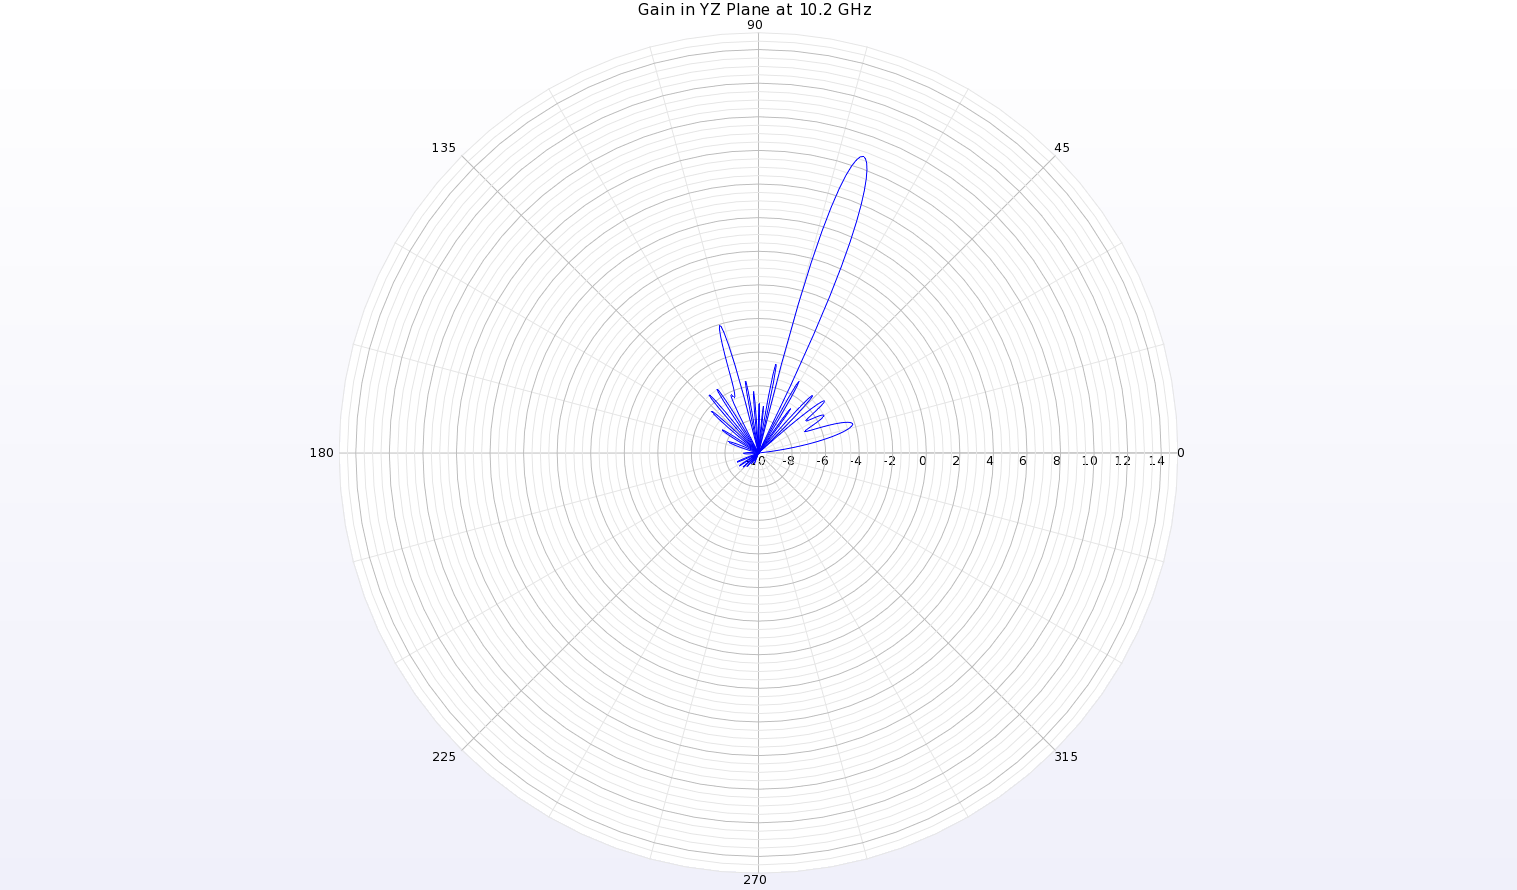 Figura 7: Un diagrama polar del diagrama de ganancia a 10,2 GHz en el plano YZ (a lo largo de la antena) muestra un haz estrecho a theta=70 grados con una ganancia de unos 8,6 dBi.